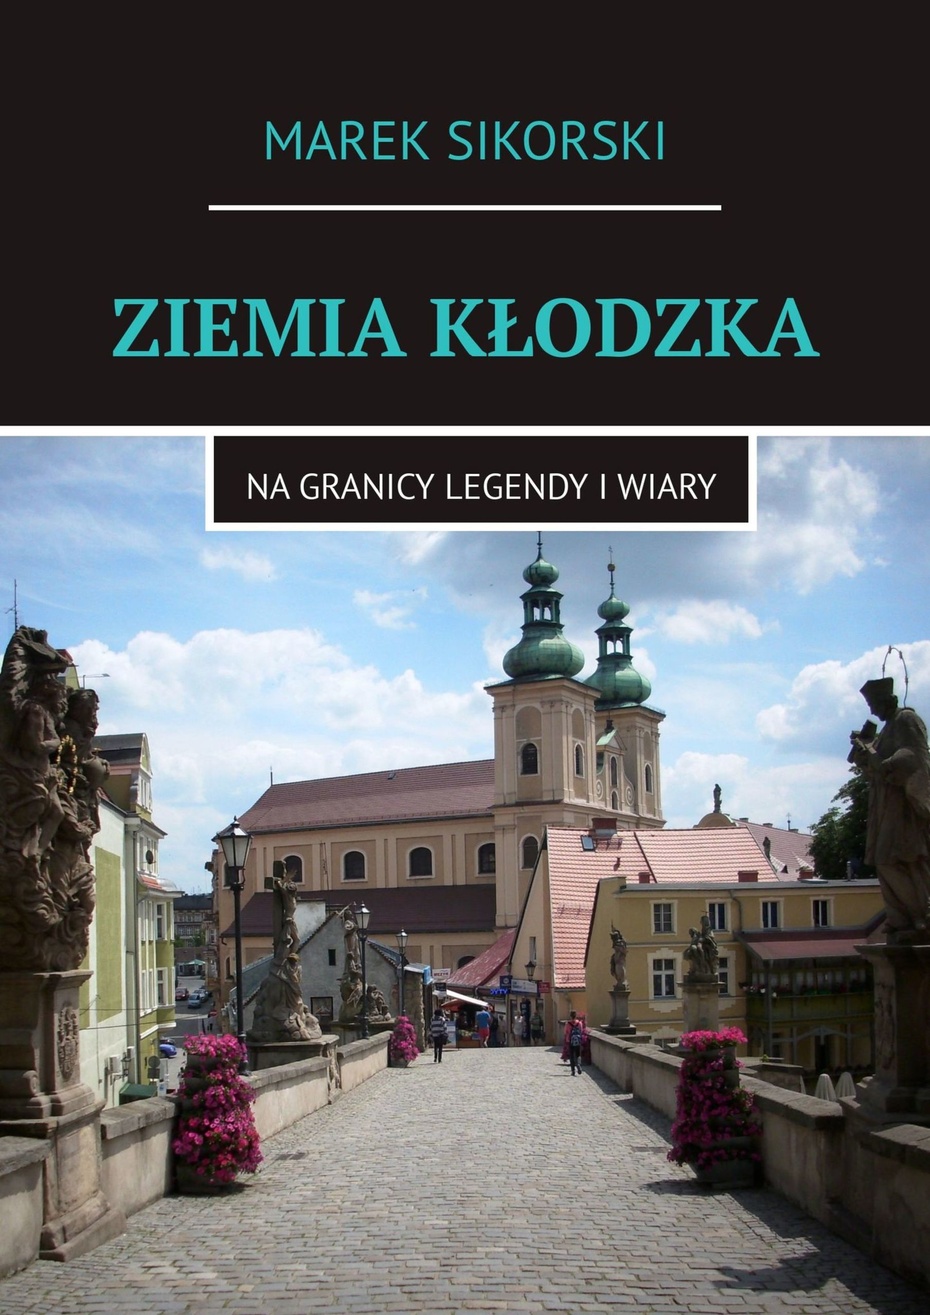 Marek Sikorski, "Ziemia Kłodzka. Na granicy legendy i wiary",  Wydawnictwo Ridero, 2020 r.